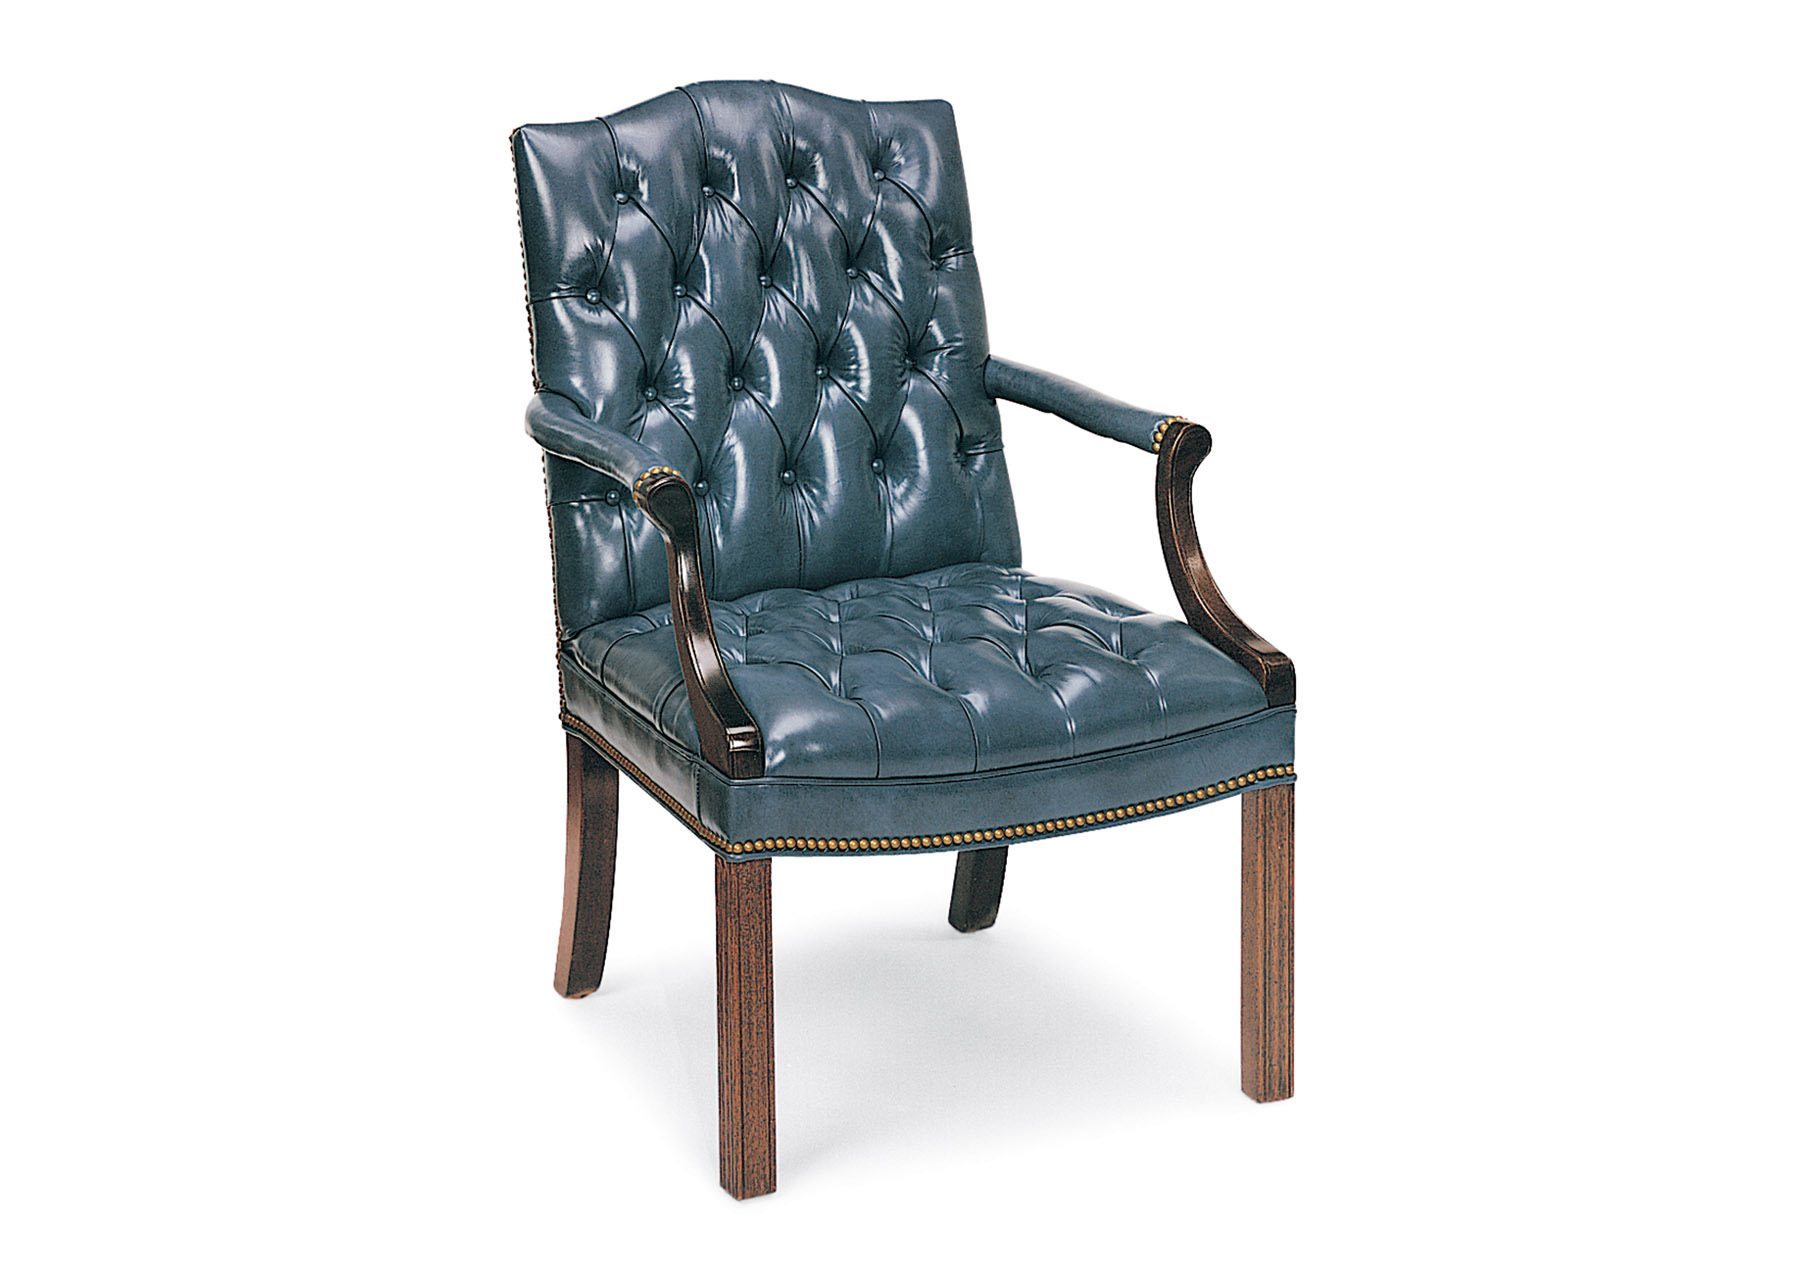 Cabot Wrenn Legends Norfolk Guest Chair